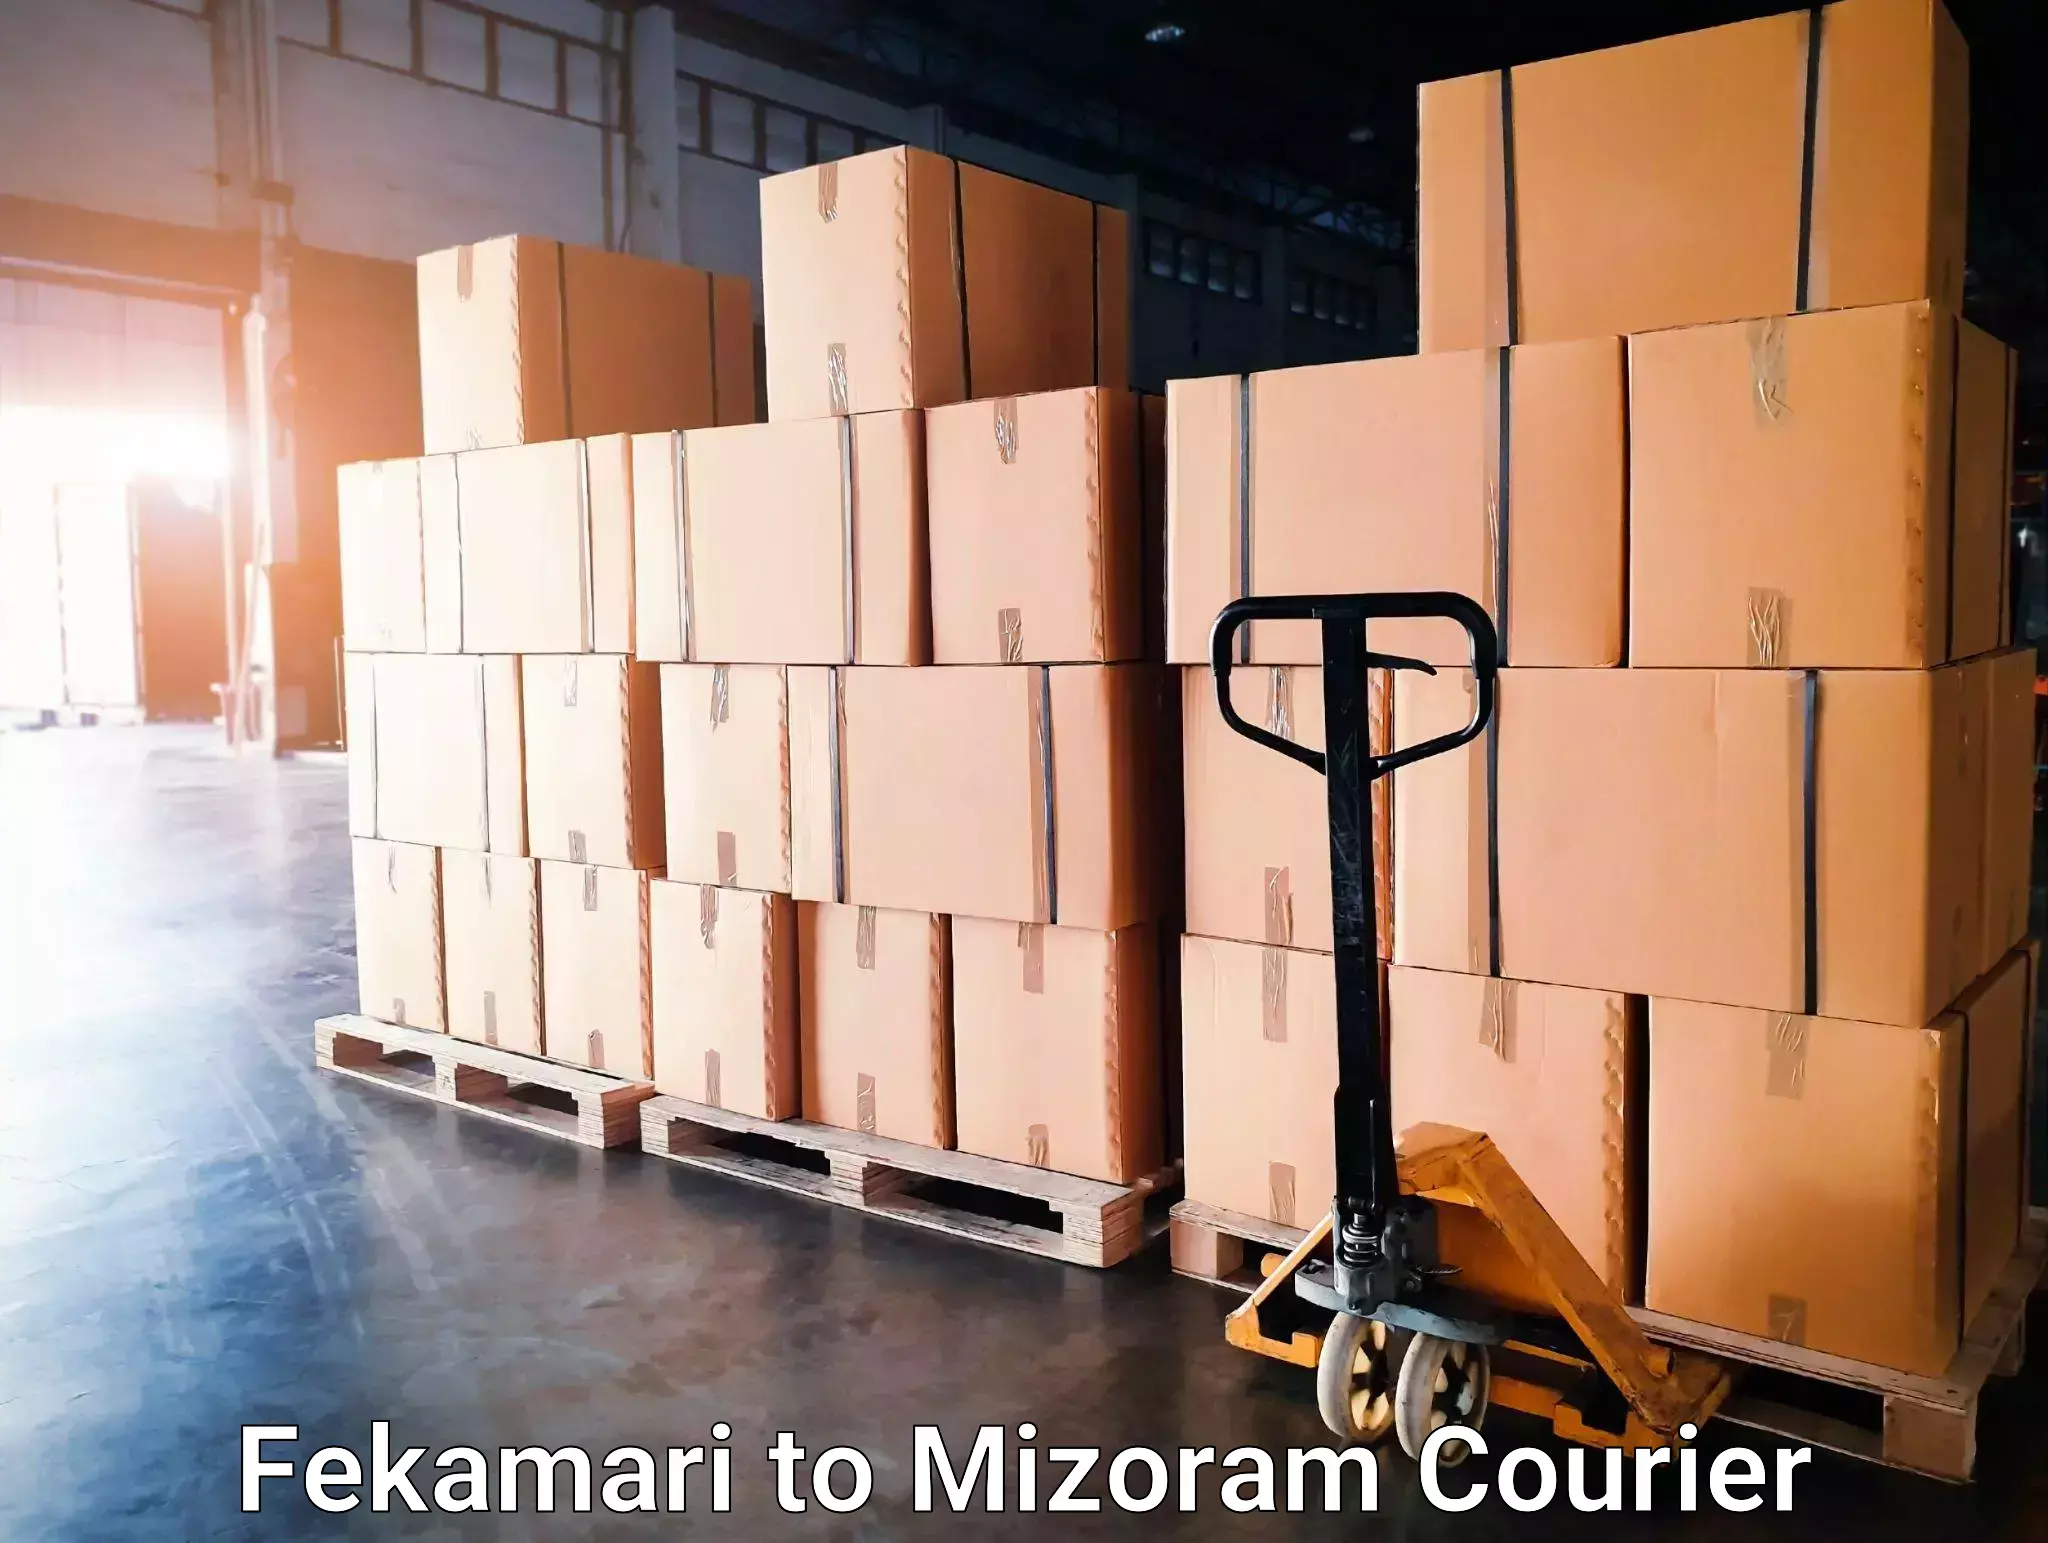 24-hour courier service Fekamari to Saiha